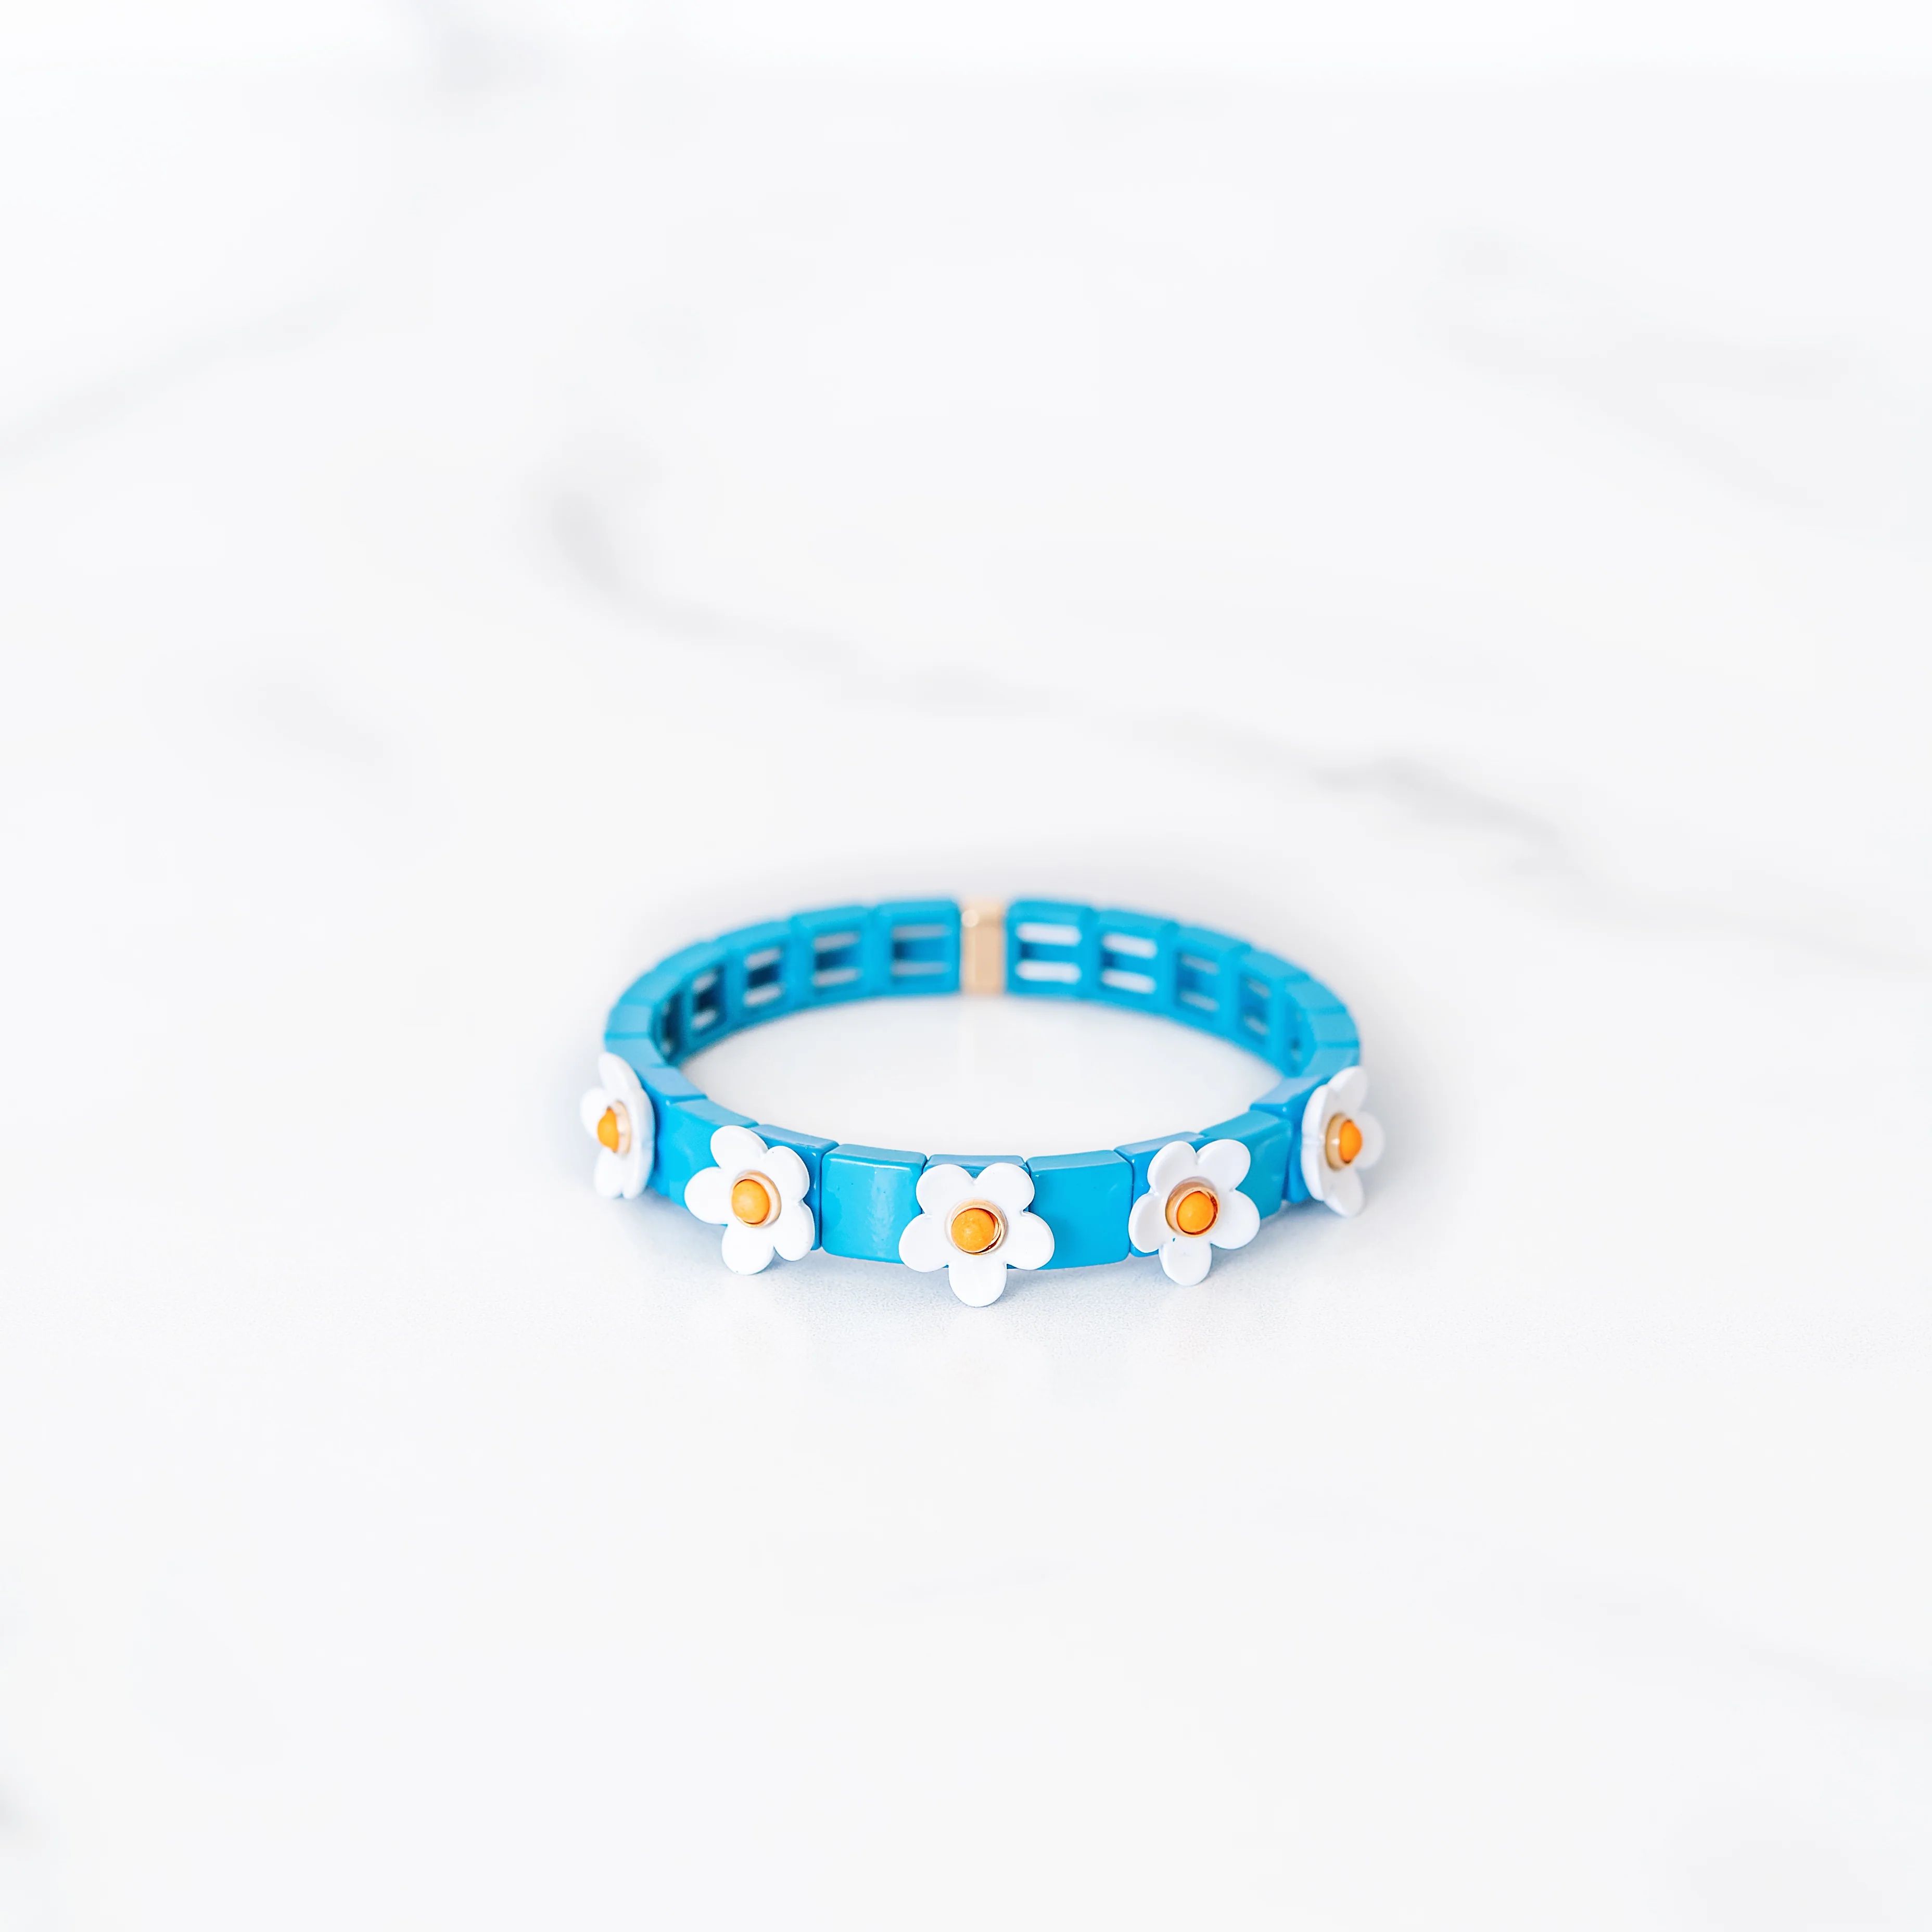 Blue and White Daisy Tile Bracelet | Golden Thread